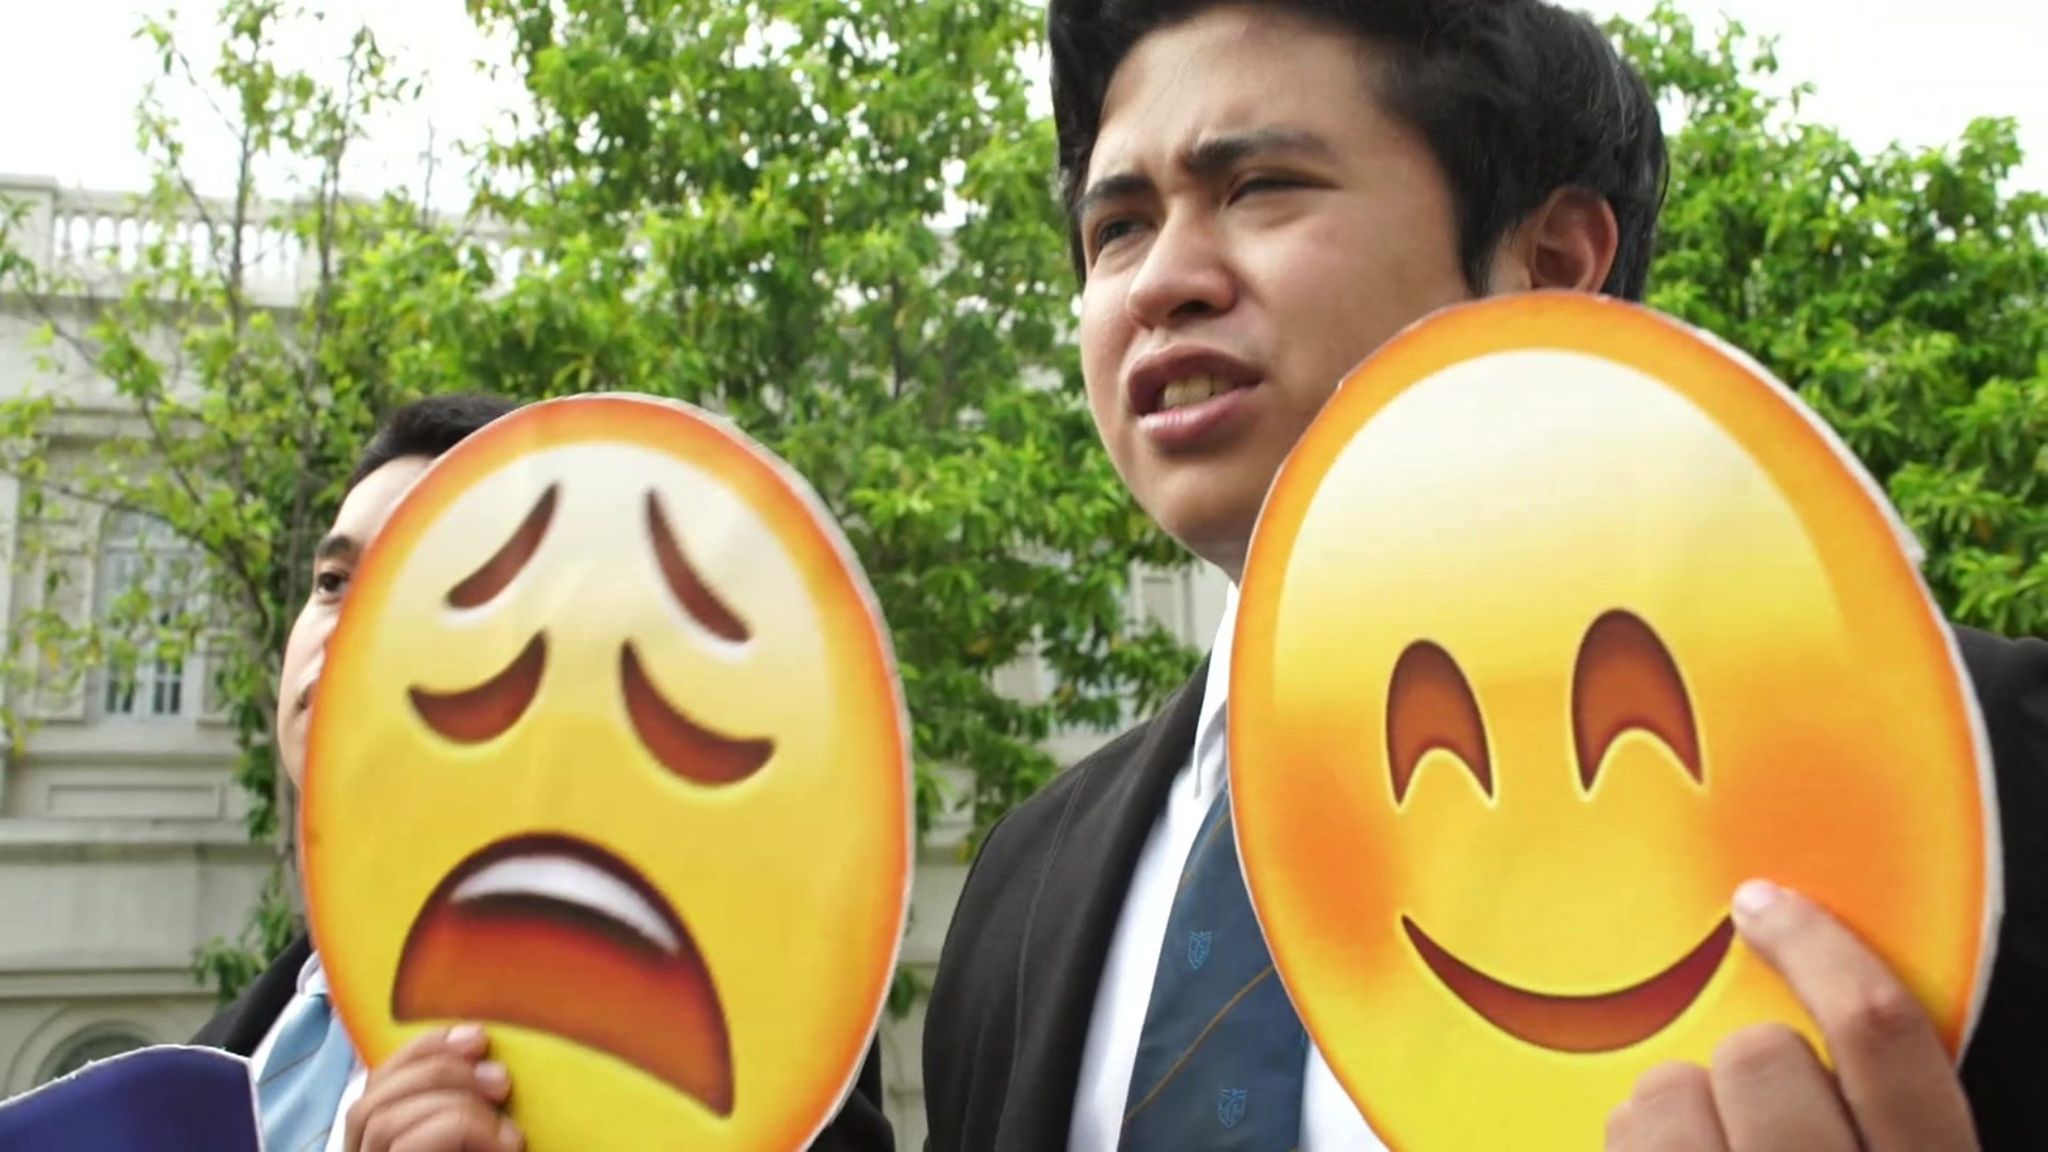 Filipino student holds up emojis